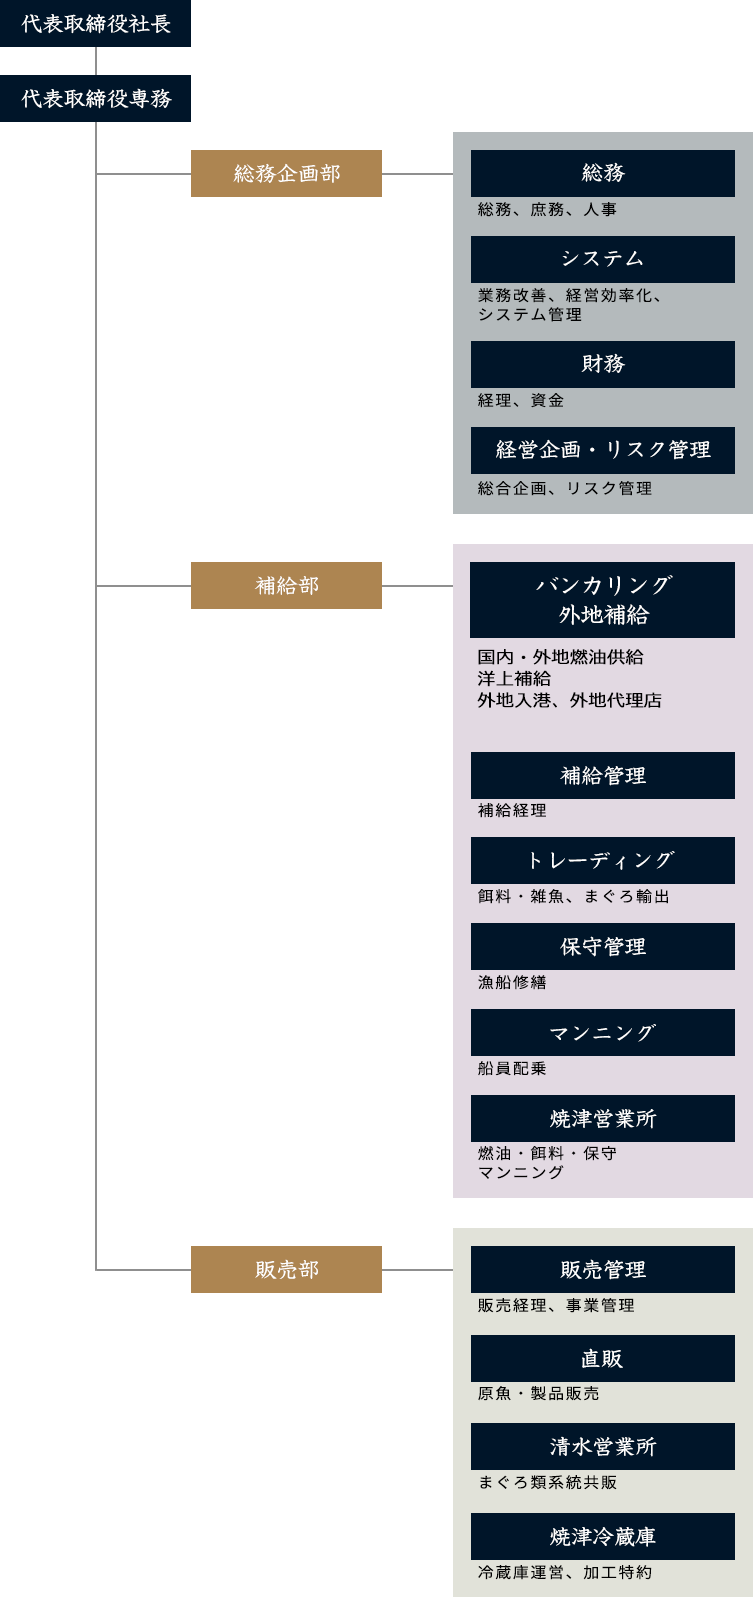 日本かつお・まぐろ漁業協同組合 組織図